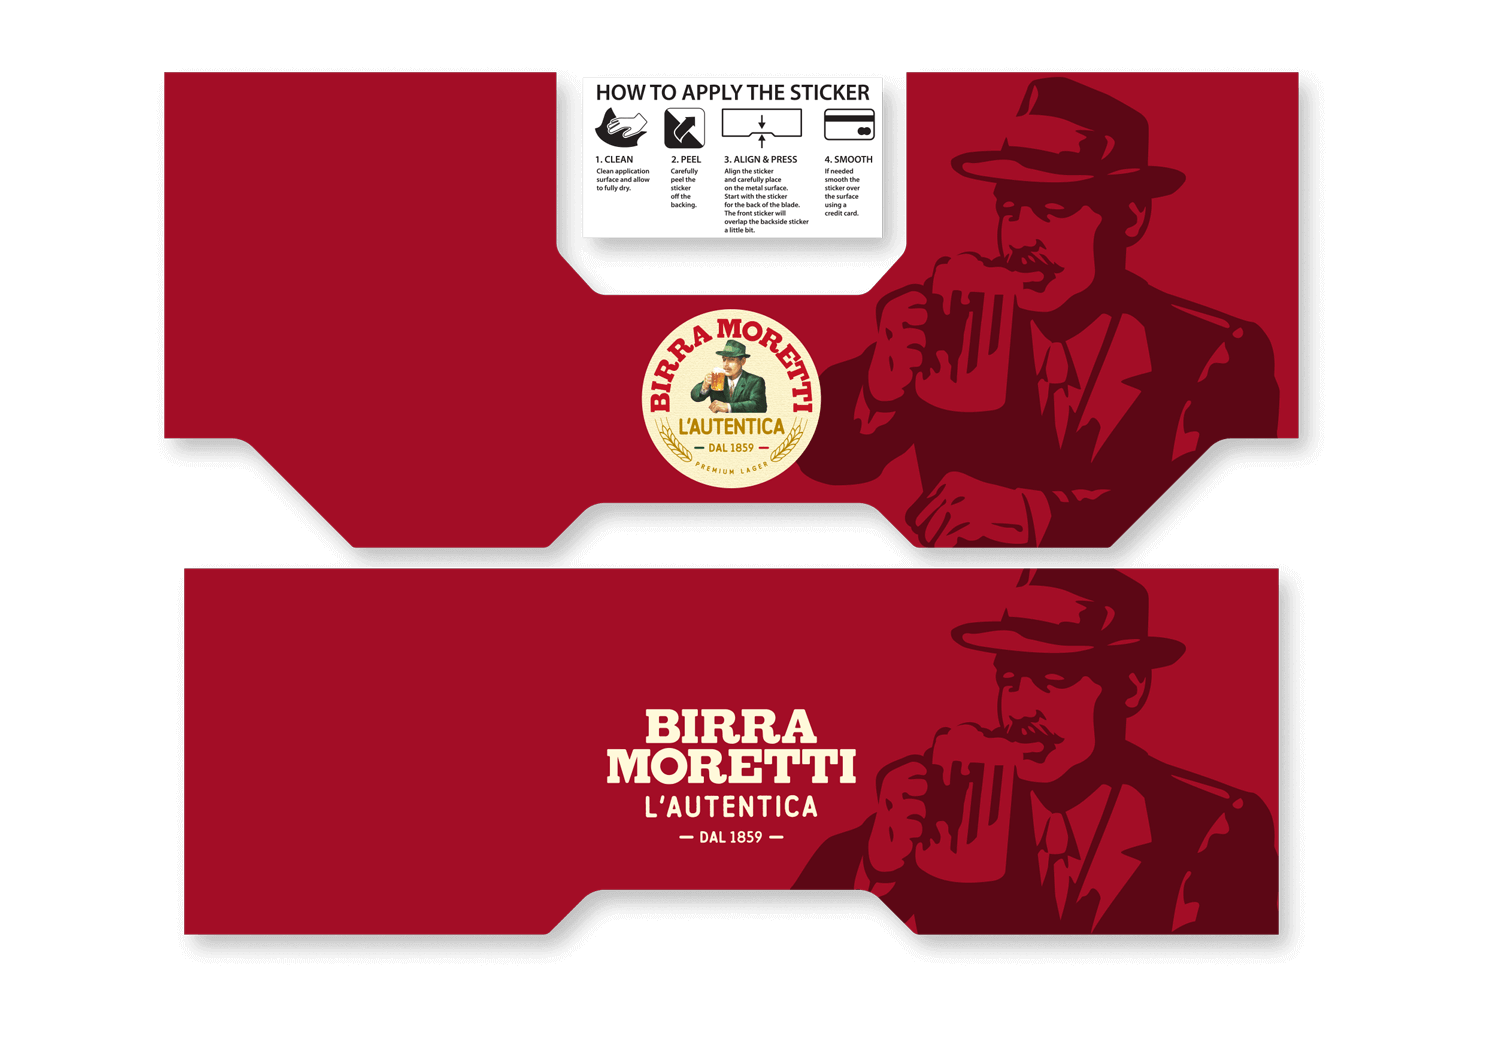 The Birra Moretti BLADE Sticker